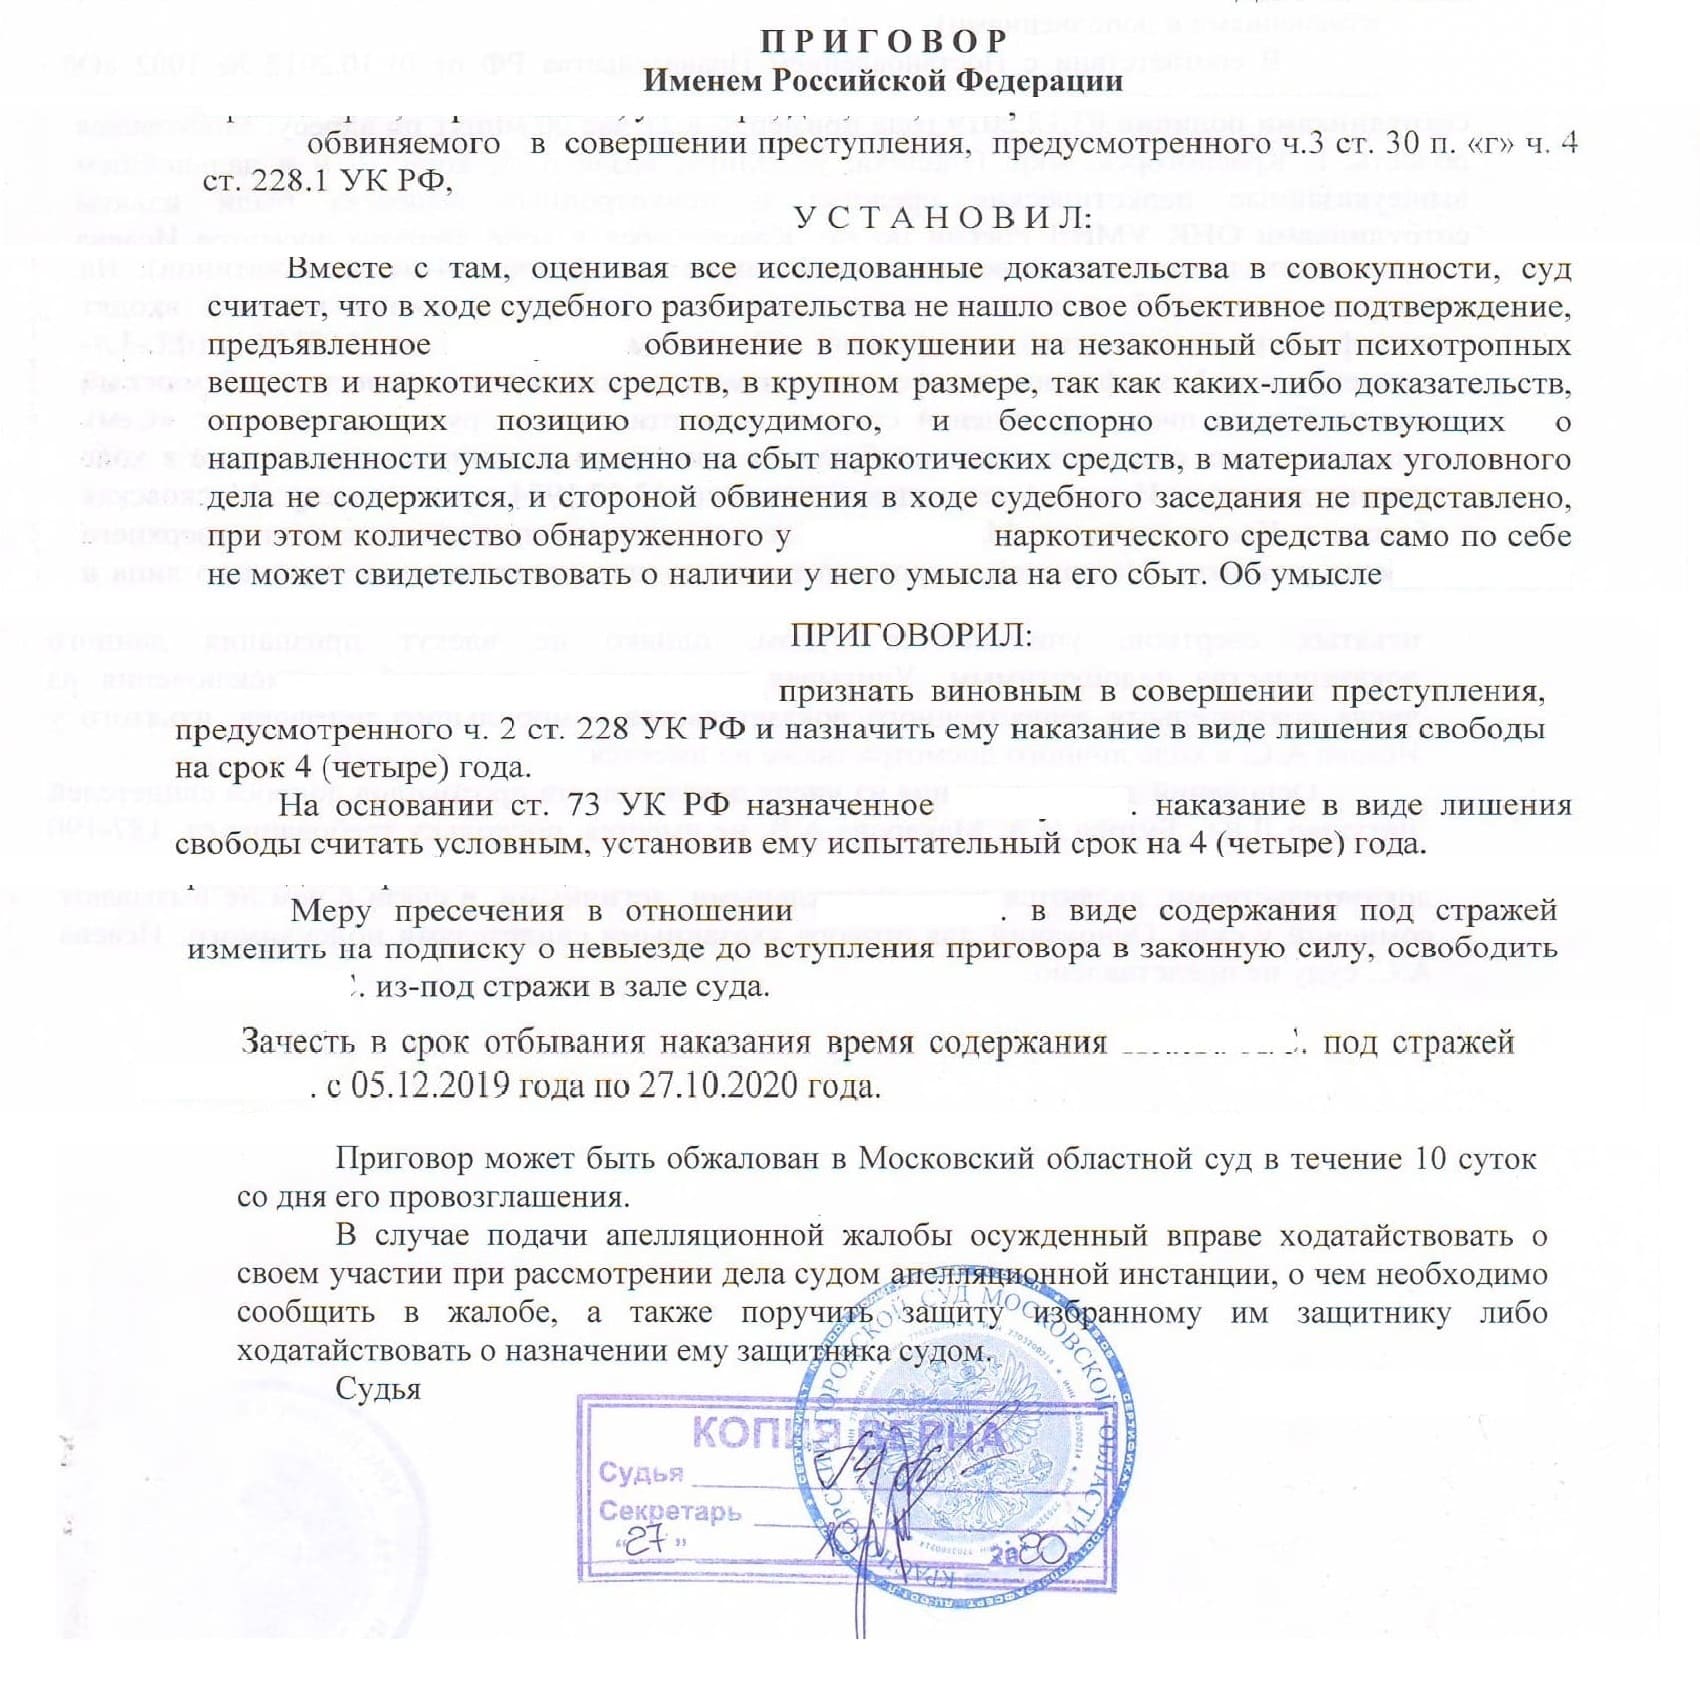 Переквалификация сбыта ч. 4 ст. 228.1 УК РФ на хранение ч. 2 ст. 228 УК РФ — условный срок